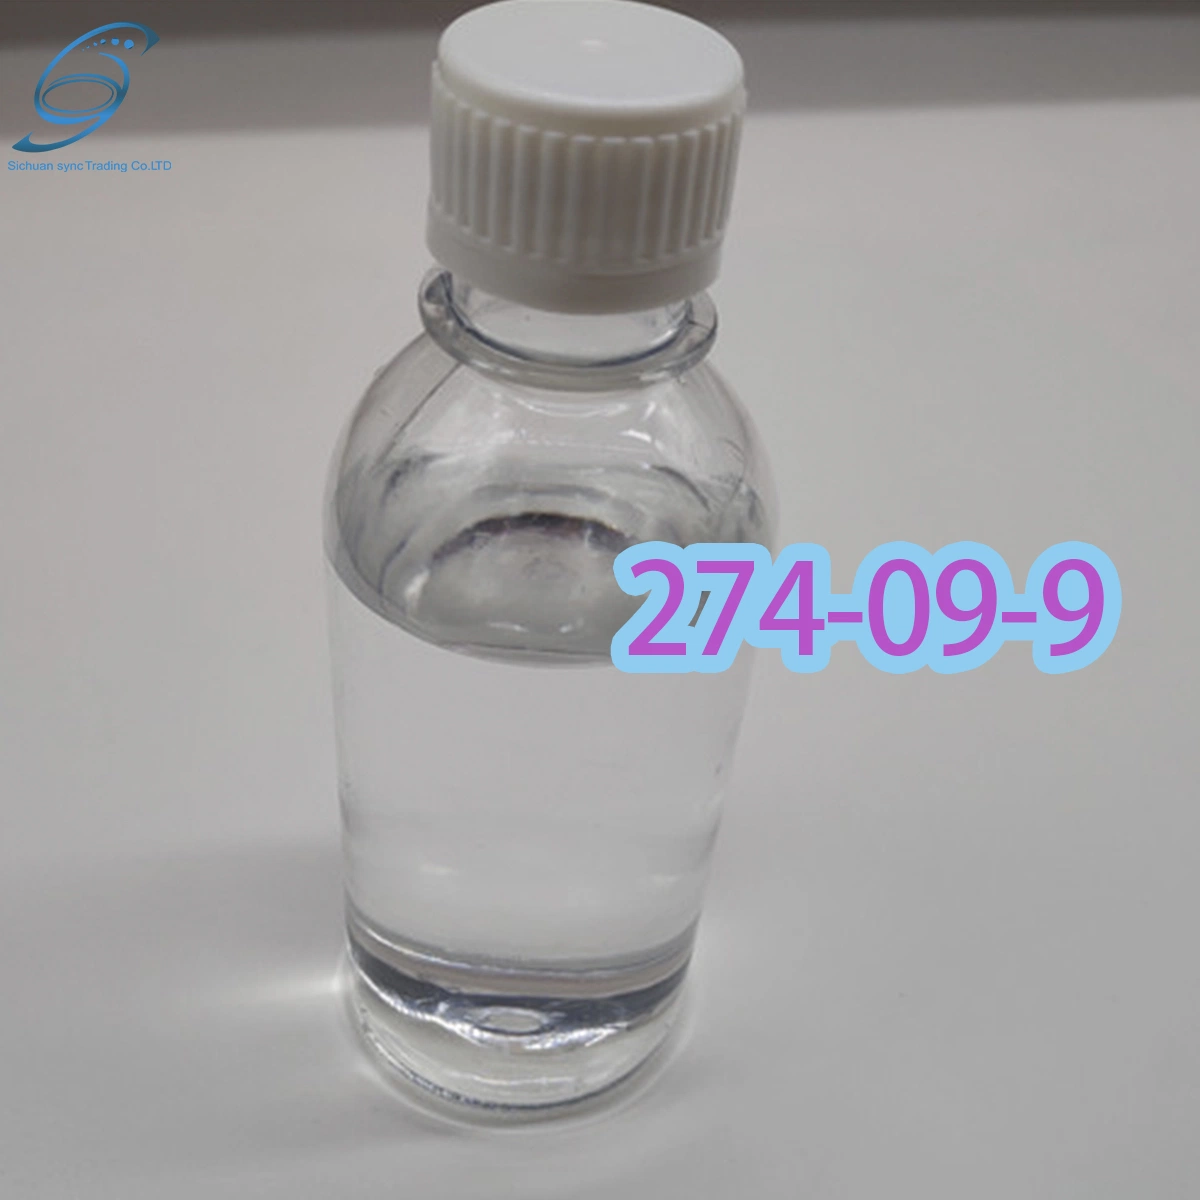 274-09-9/Chemische Hilfs-/Andere Chemikalien/Gewichtsverlust/1 2-Methylendioxybenzol